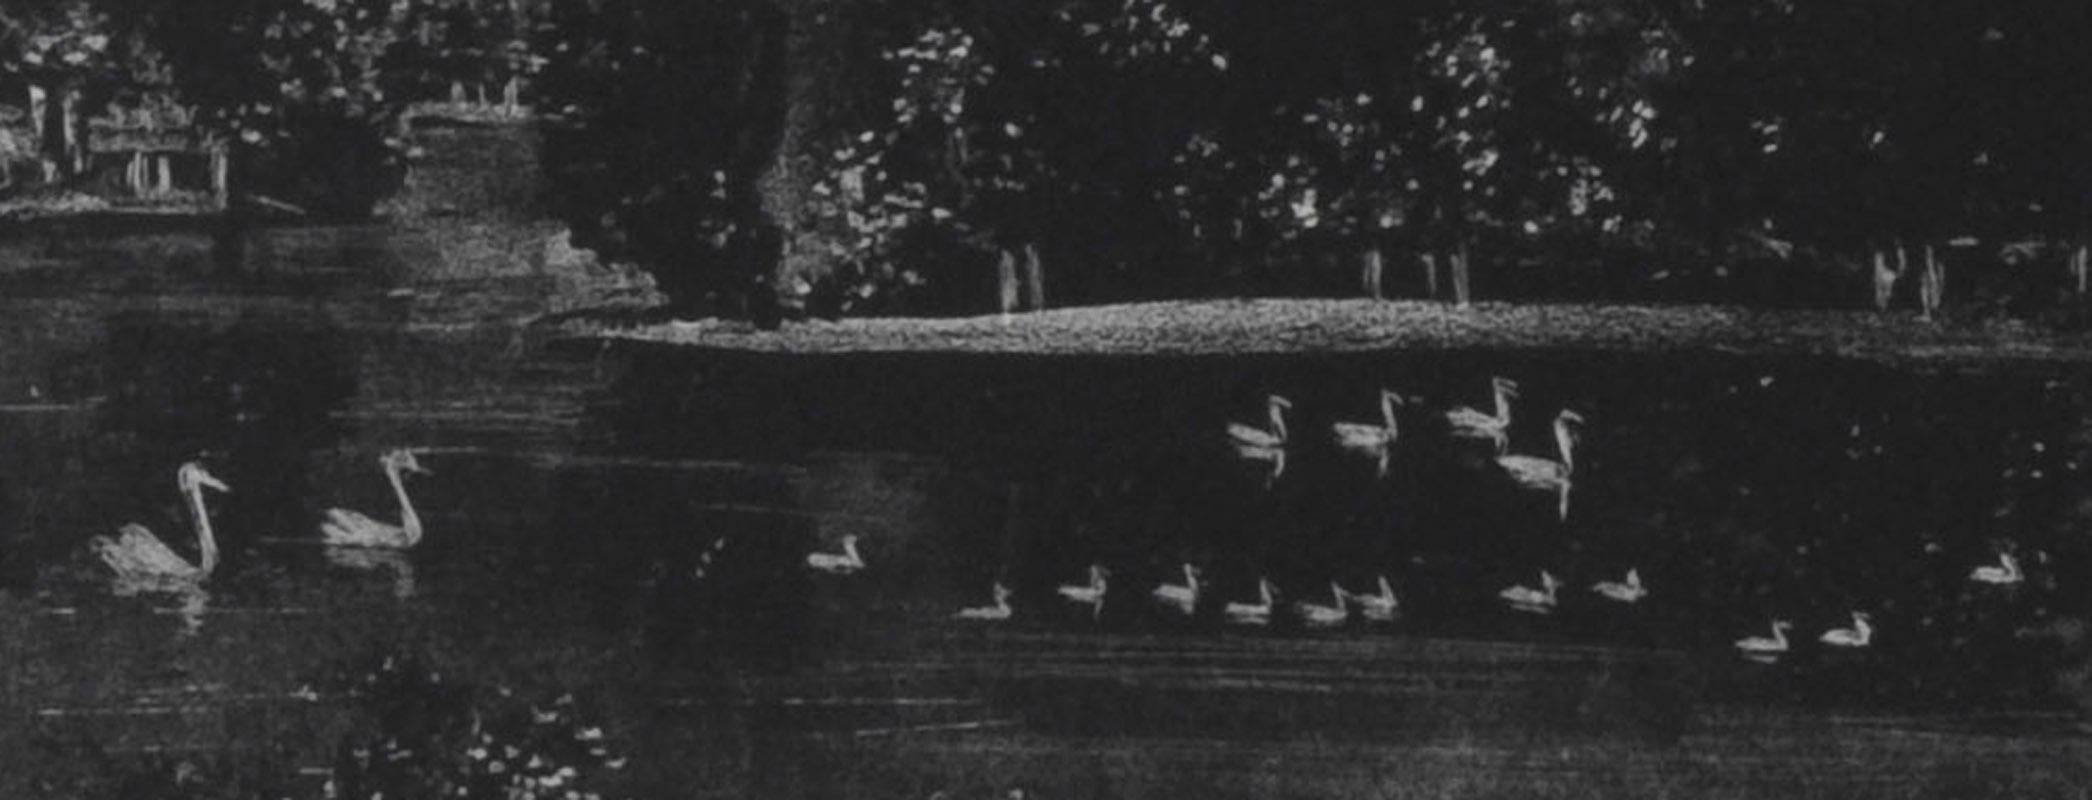 Nuit de Central Park
Lithographie, 1946
Signé et daté en bas à droite (voir photo)
Titré, en bas au centre
Numéro en bas à gauche (voir photo)
Édition : 40, plus épreuves d'essai (23/40)
Cette image représente le lac de Central Park Lake, en